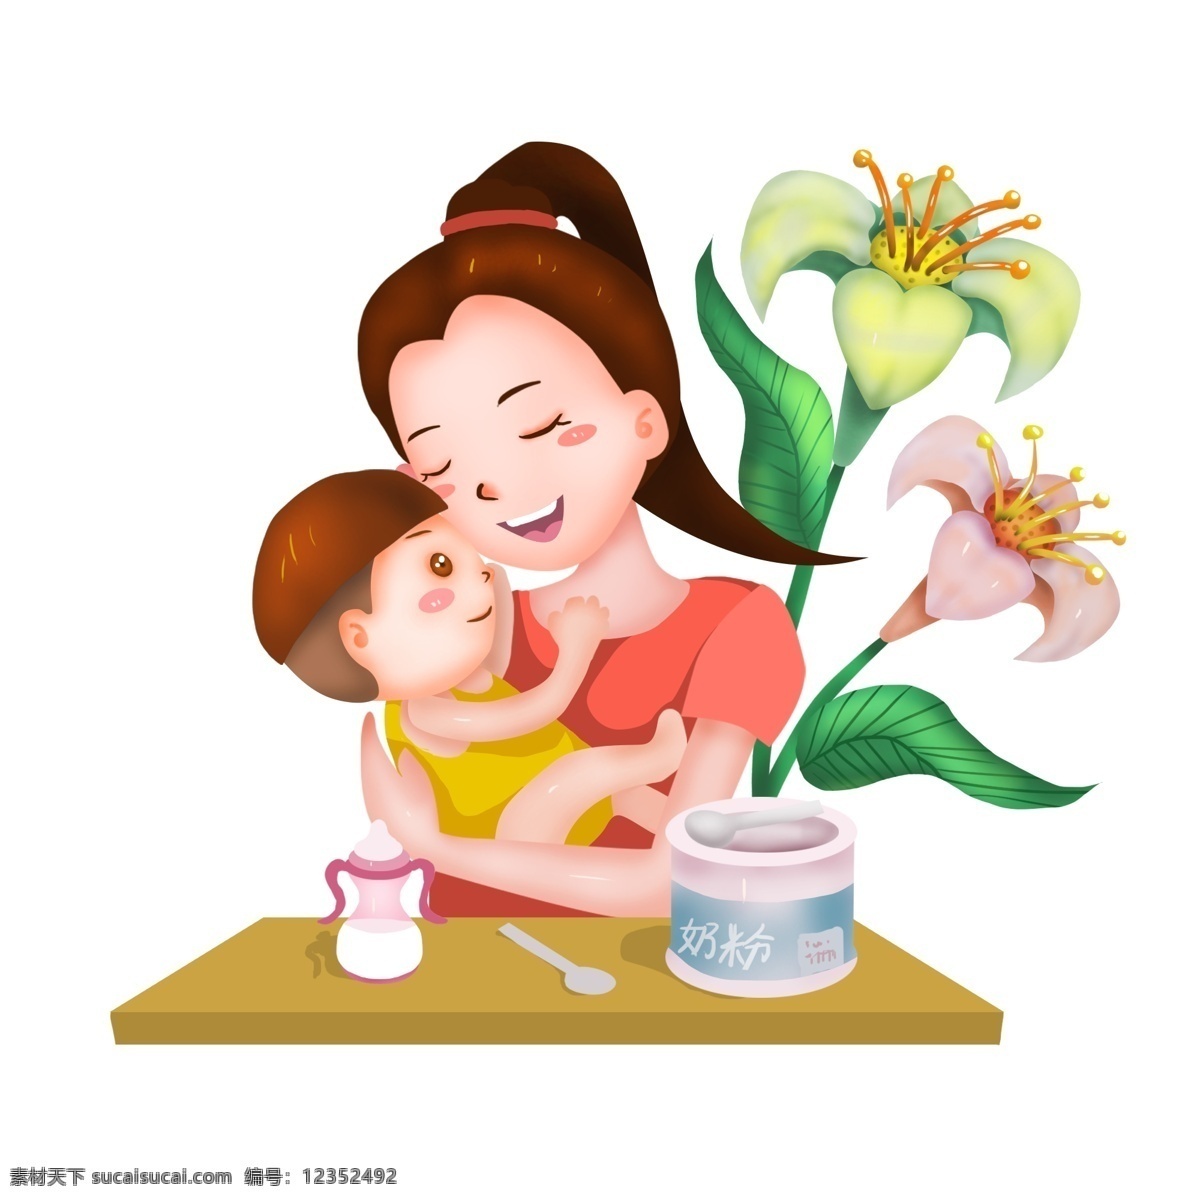 商用 母亲 抱 婴儿 鲜花 手绘 场景 可商用